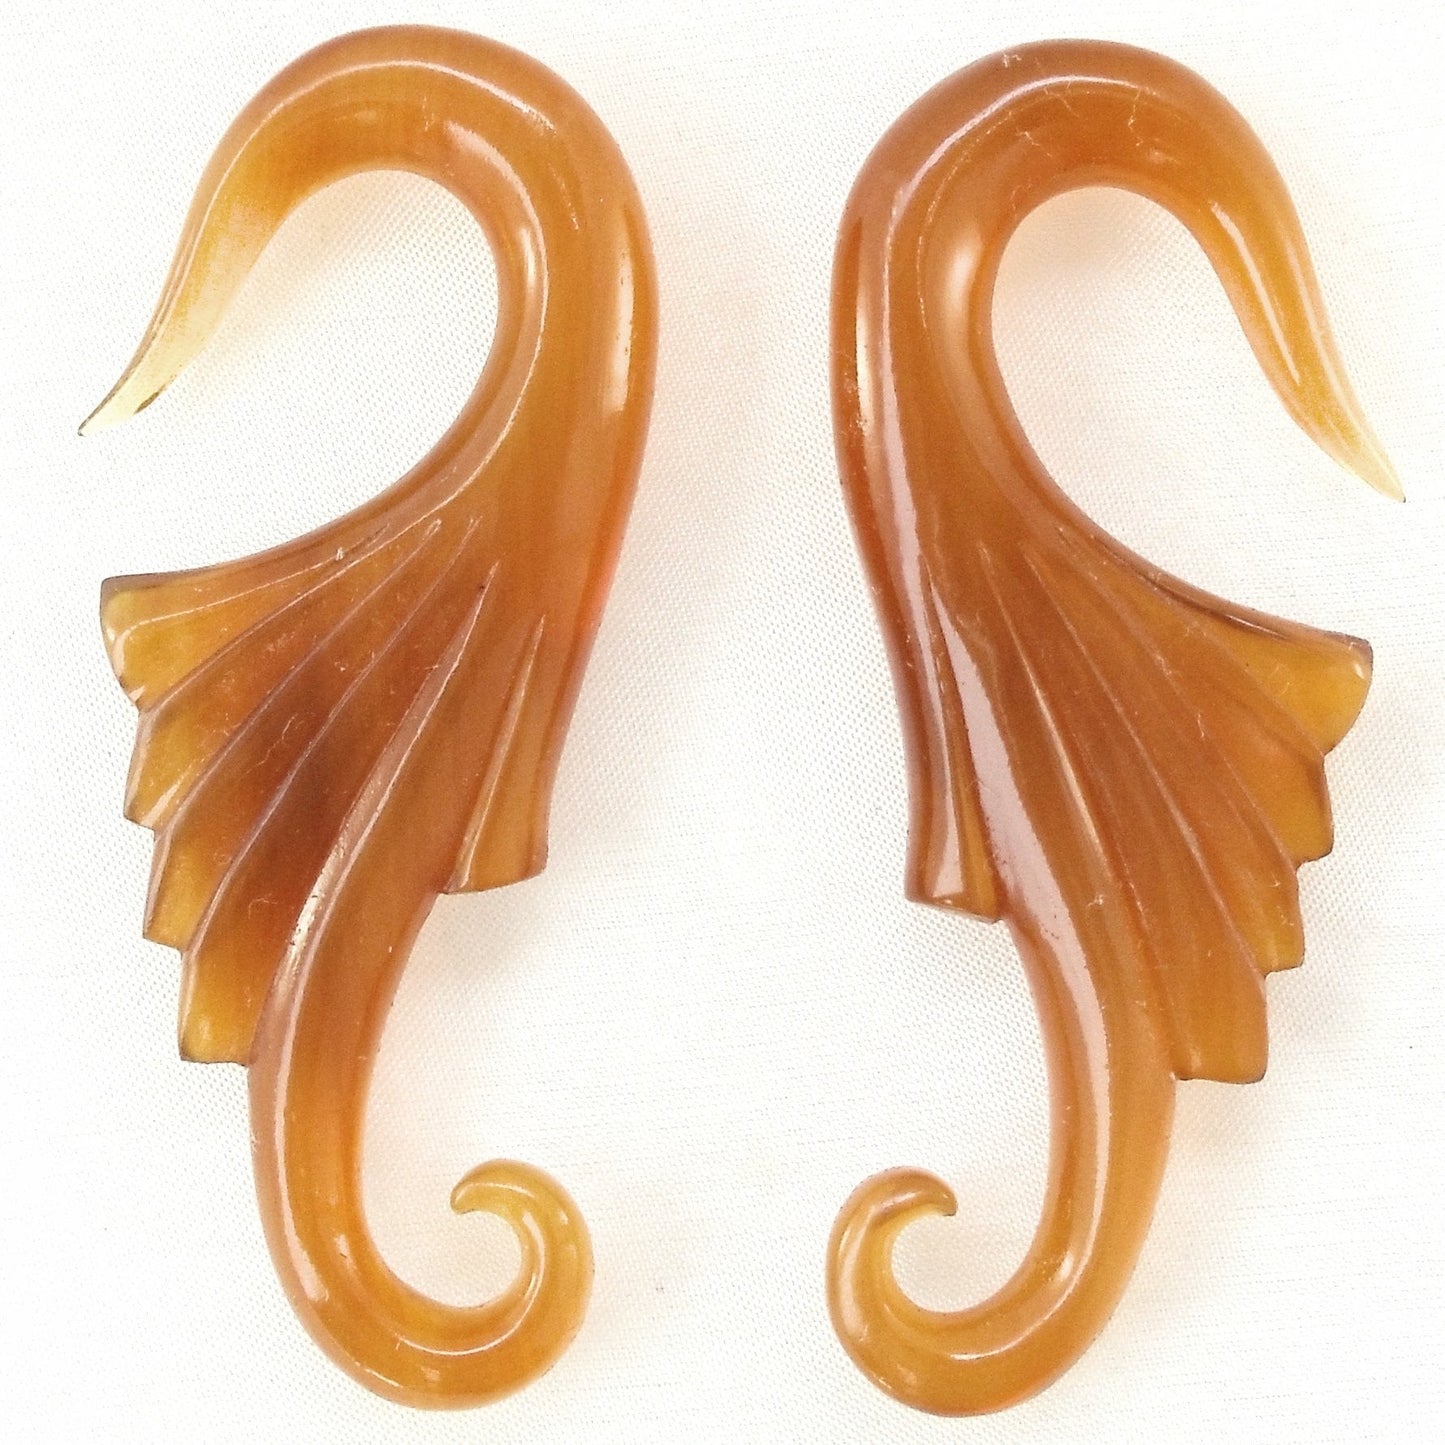 Neuvo Wings, 2 gauge, Amber Horn. 7/8 inch W X 2 1/4 inch L.